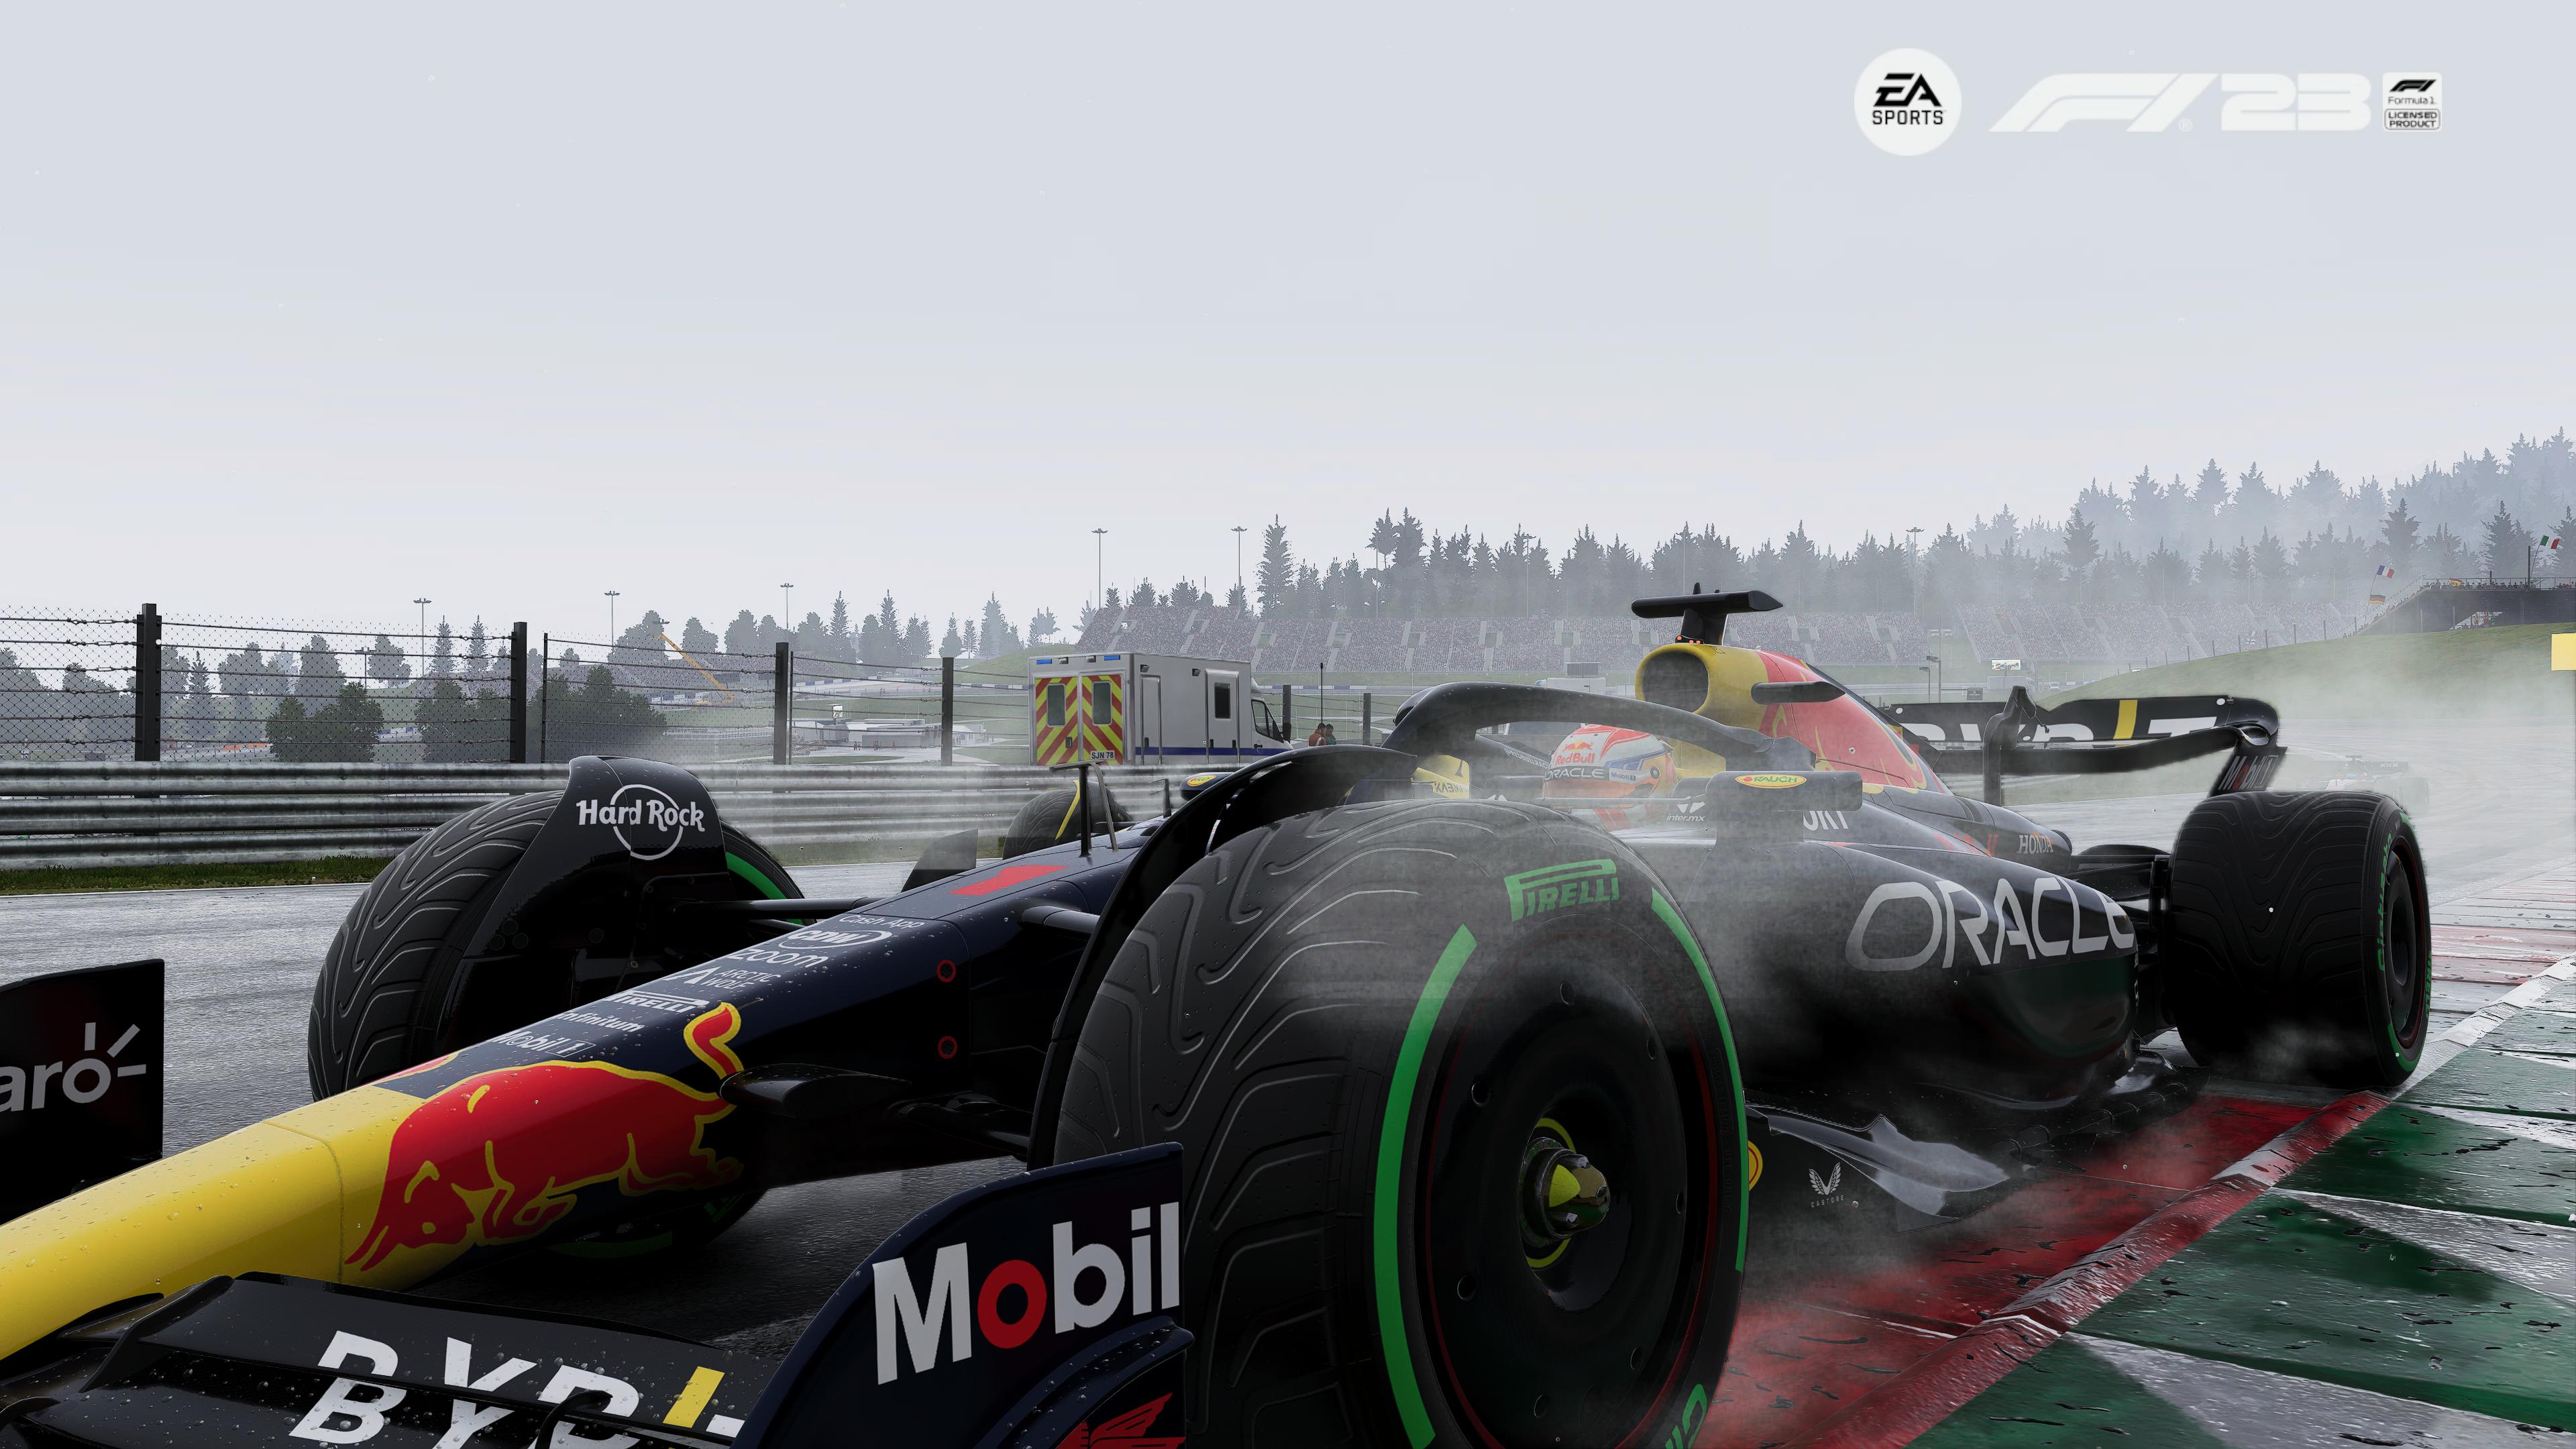 Reseña: EA Sports F1 23, el mejor juego de Fórmula 1 que han hecho 16